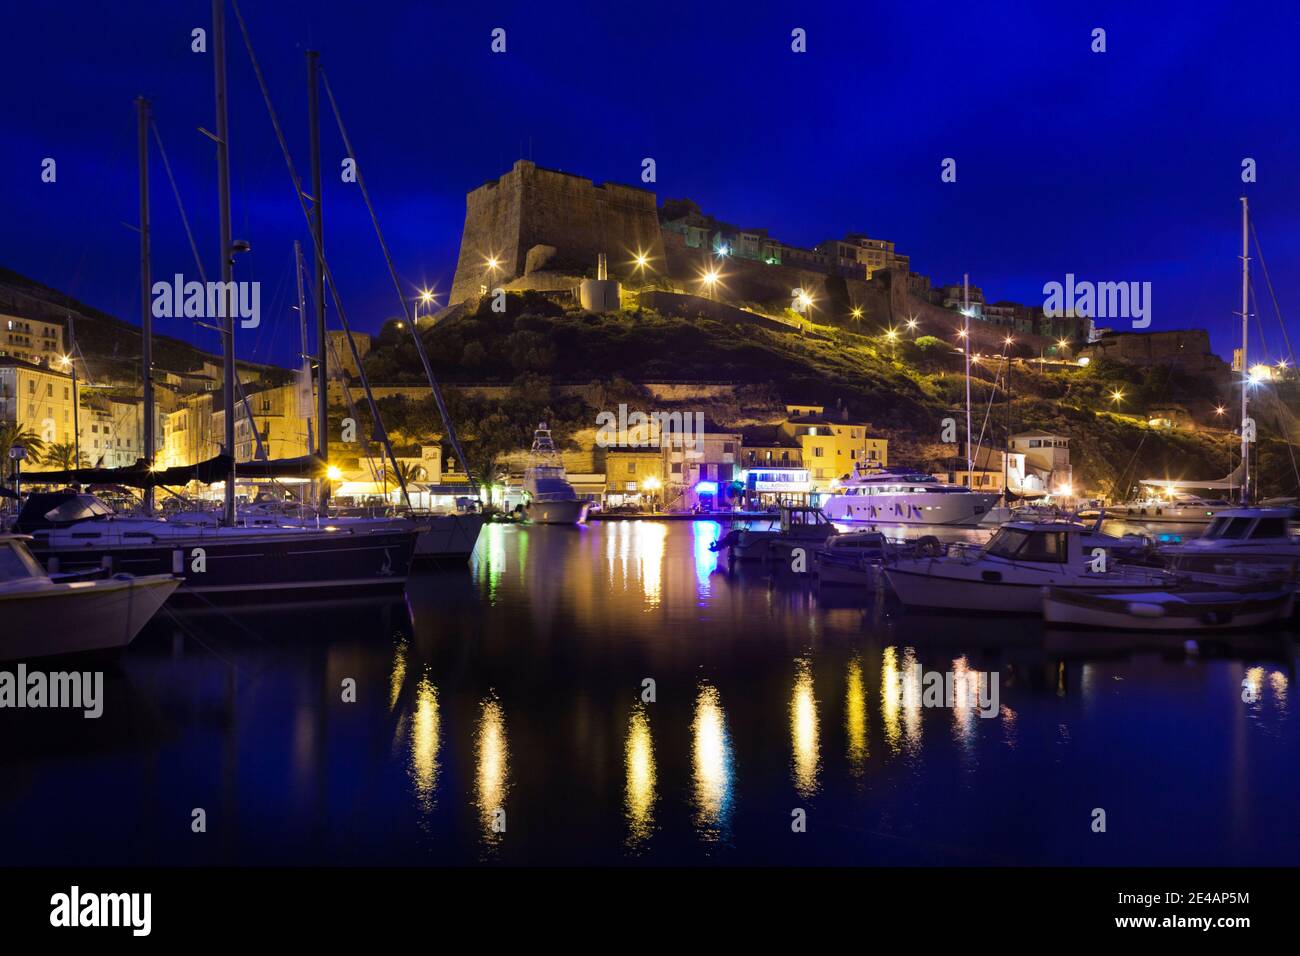 Bateaux dans un port avec citadelle en arrière-plan, Bonifacio, Corse-du-Sud, Corse, France Banque D'Images